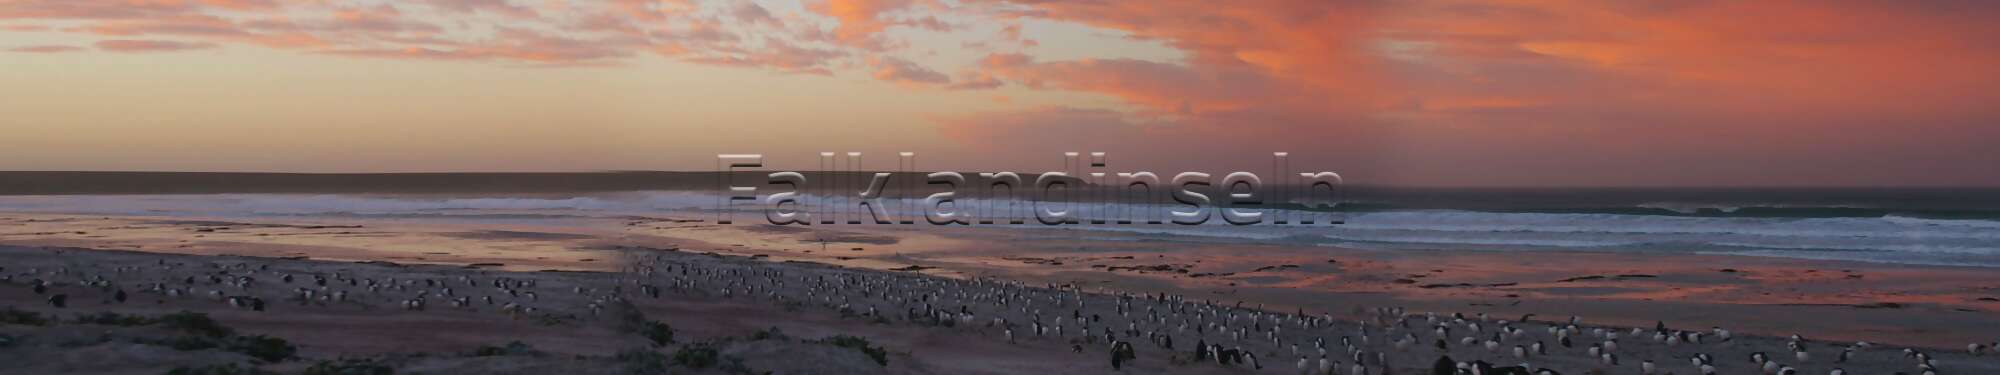 Eselspinguine - Pygoscelis Papua, Sonnenuntergang, West Falkland